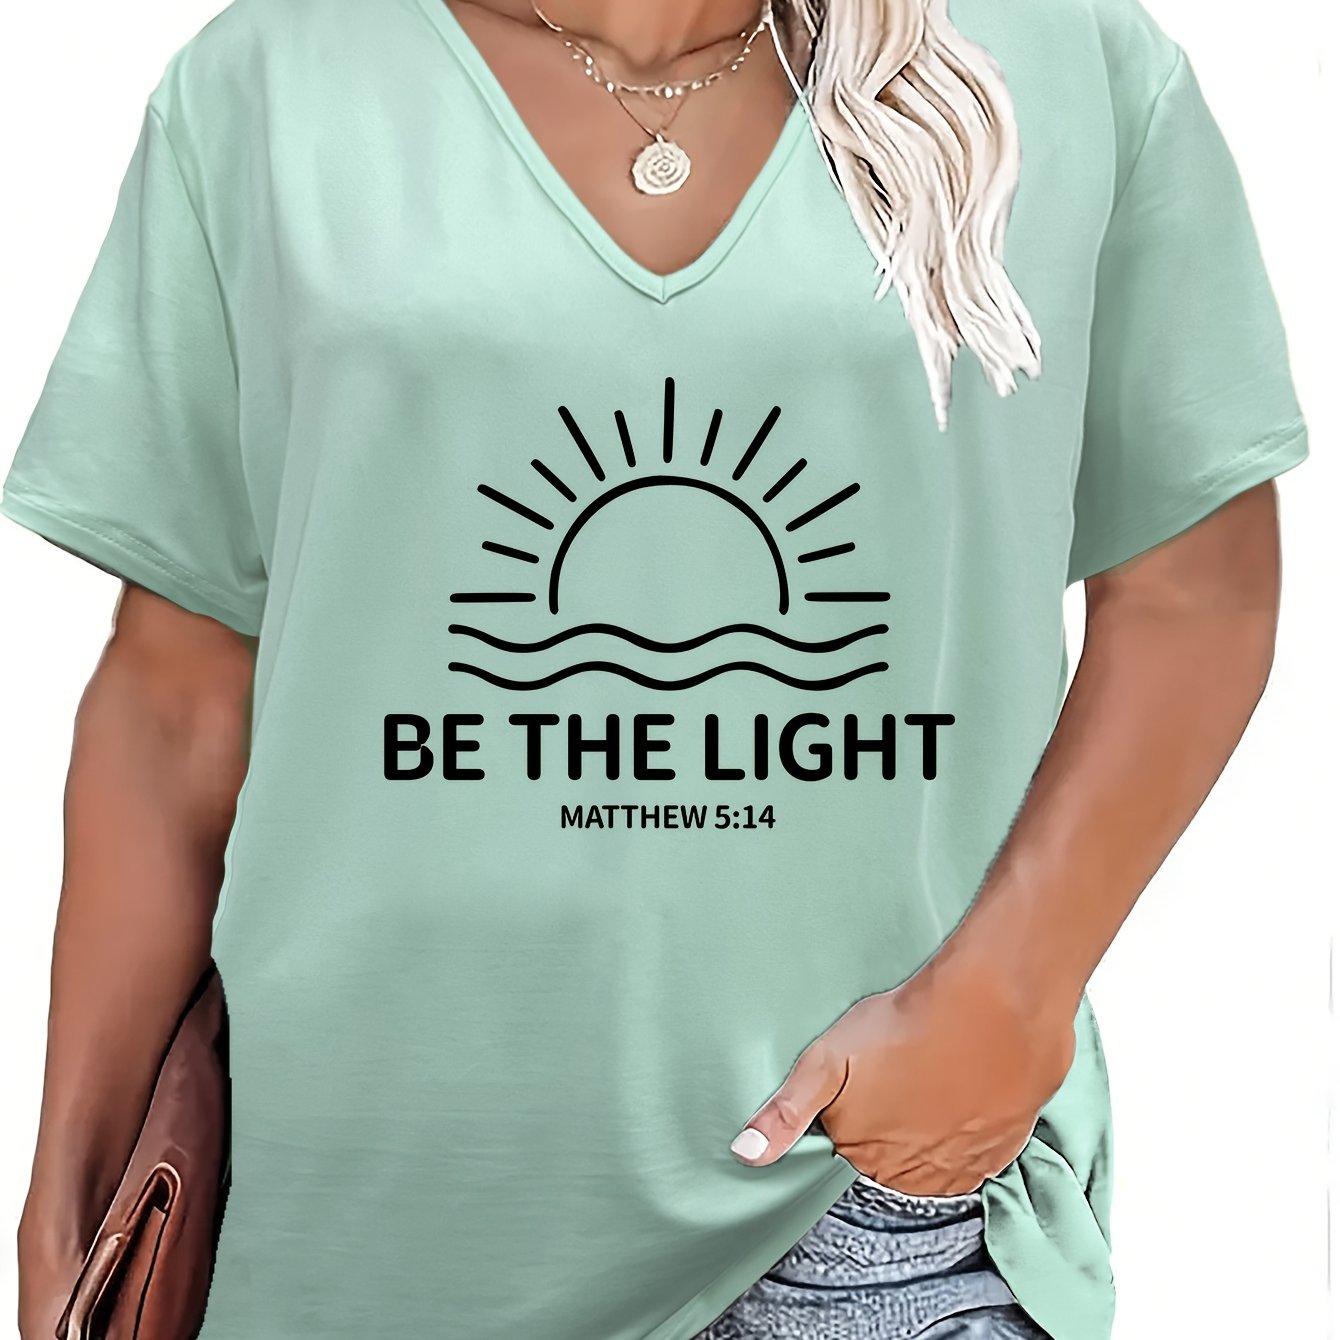 Be The Light Plus Size Women's Christian T-Shirt claimedbygoddesigns